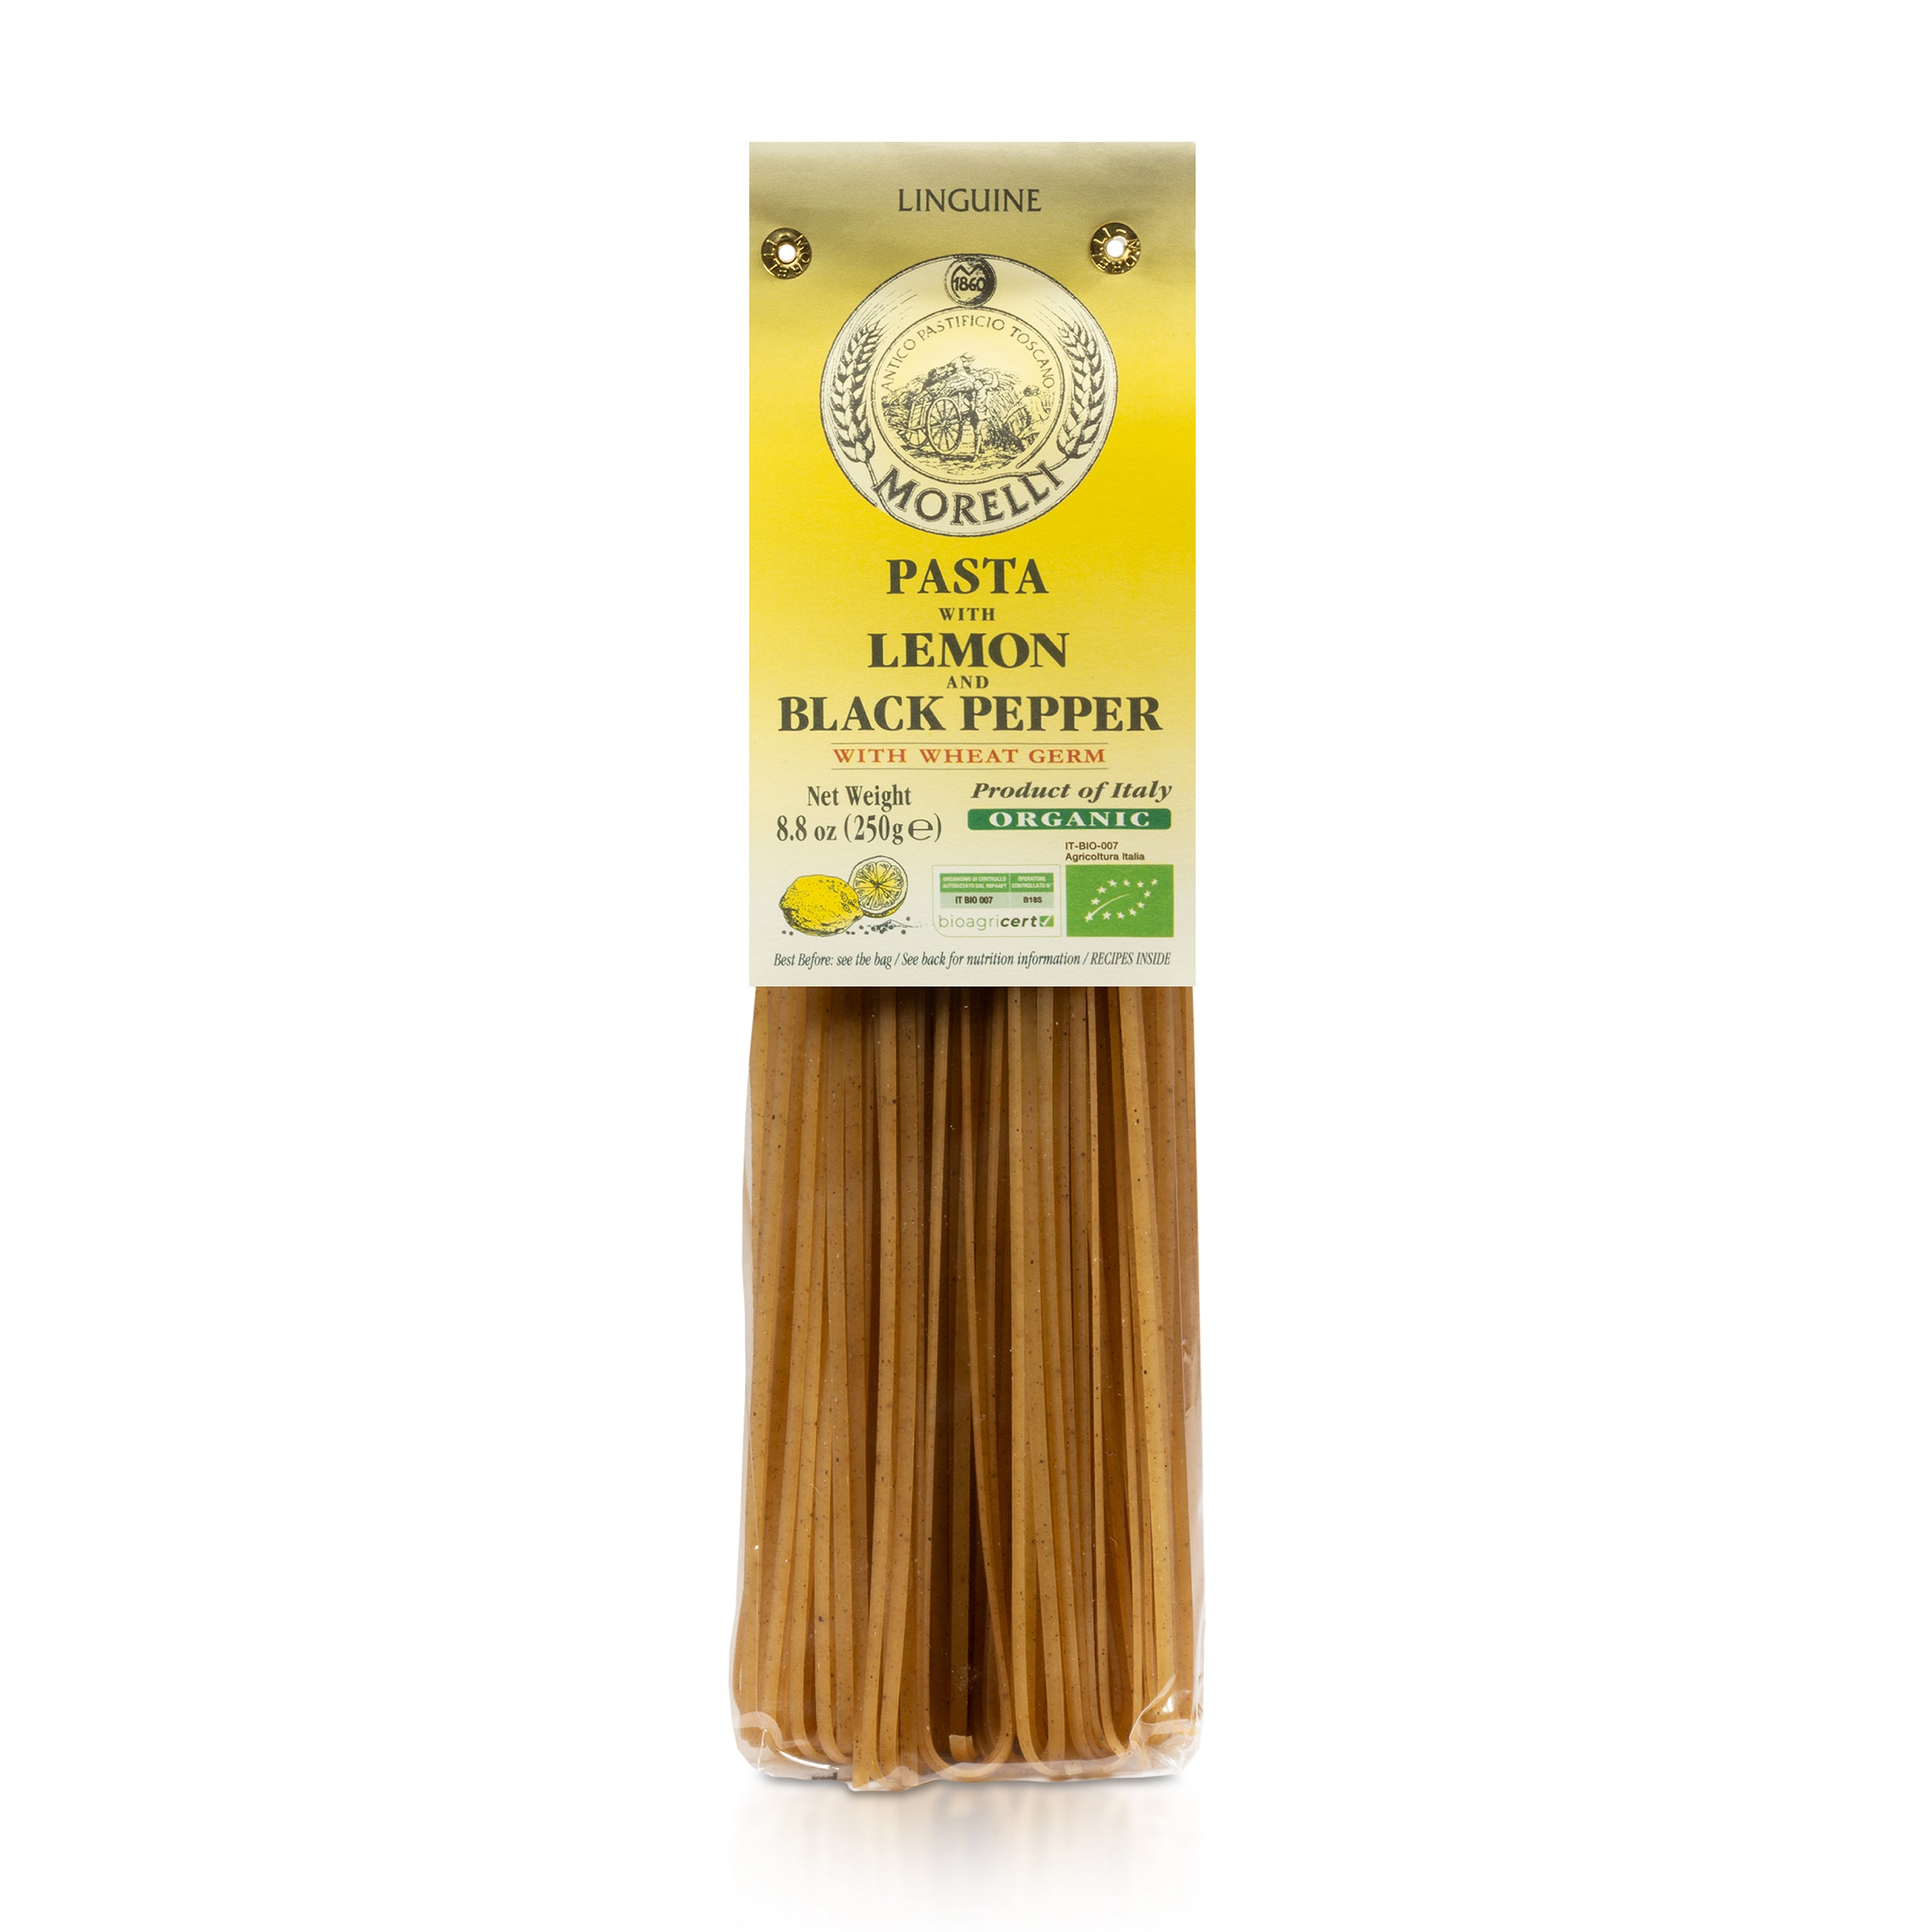 Organic Lemon Pepper Linguine - Italian Pasta by Morelli